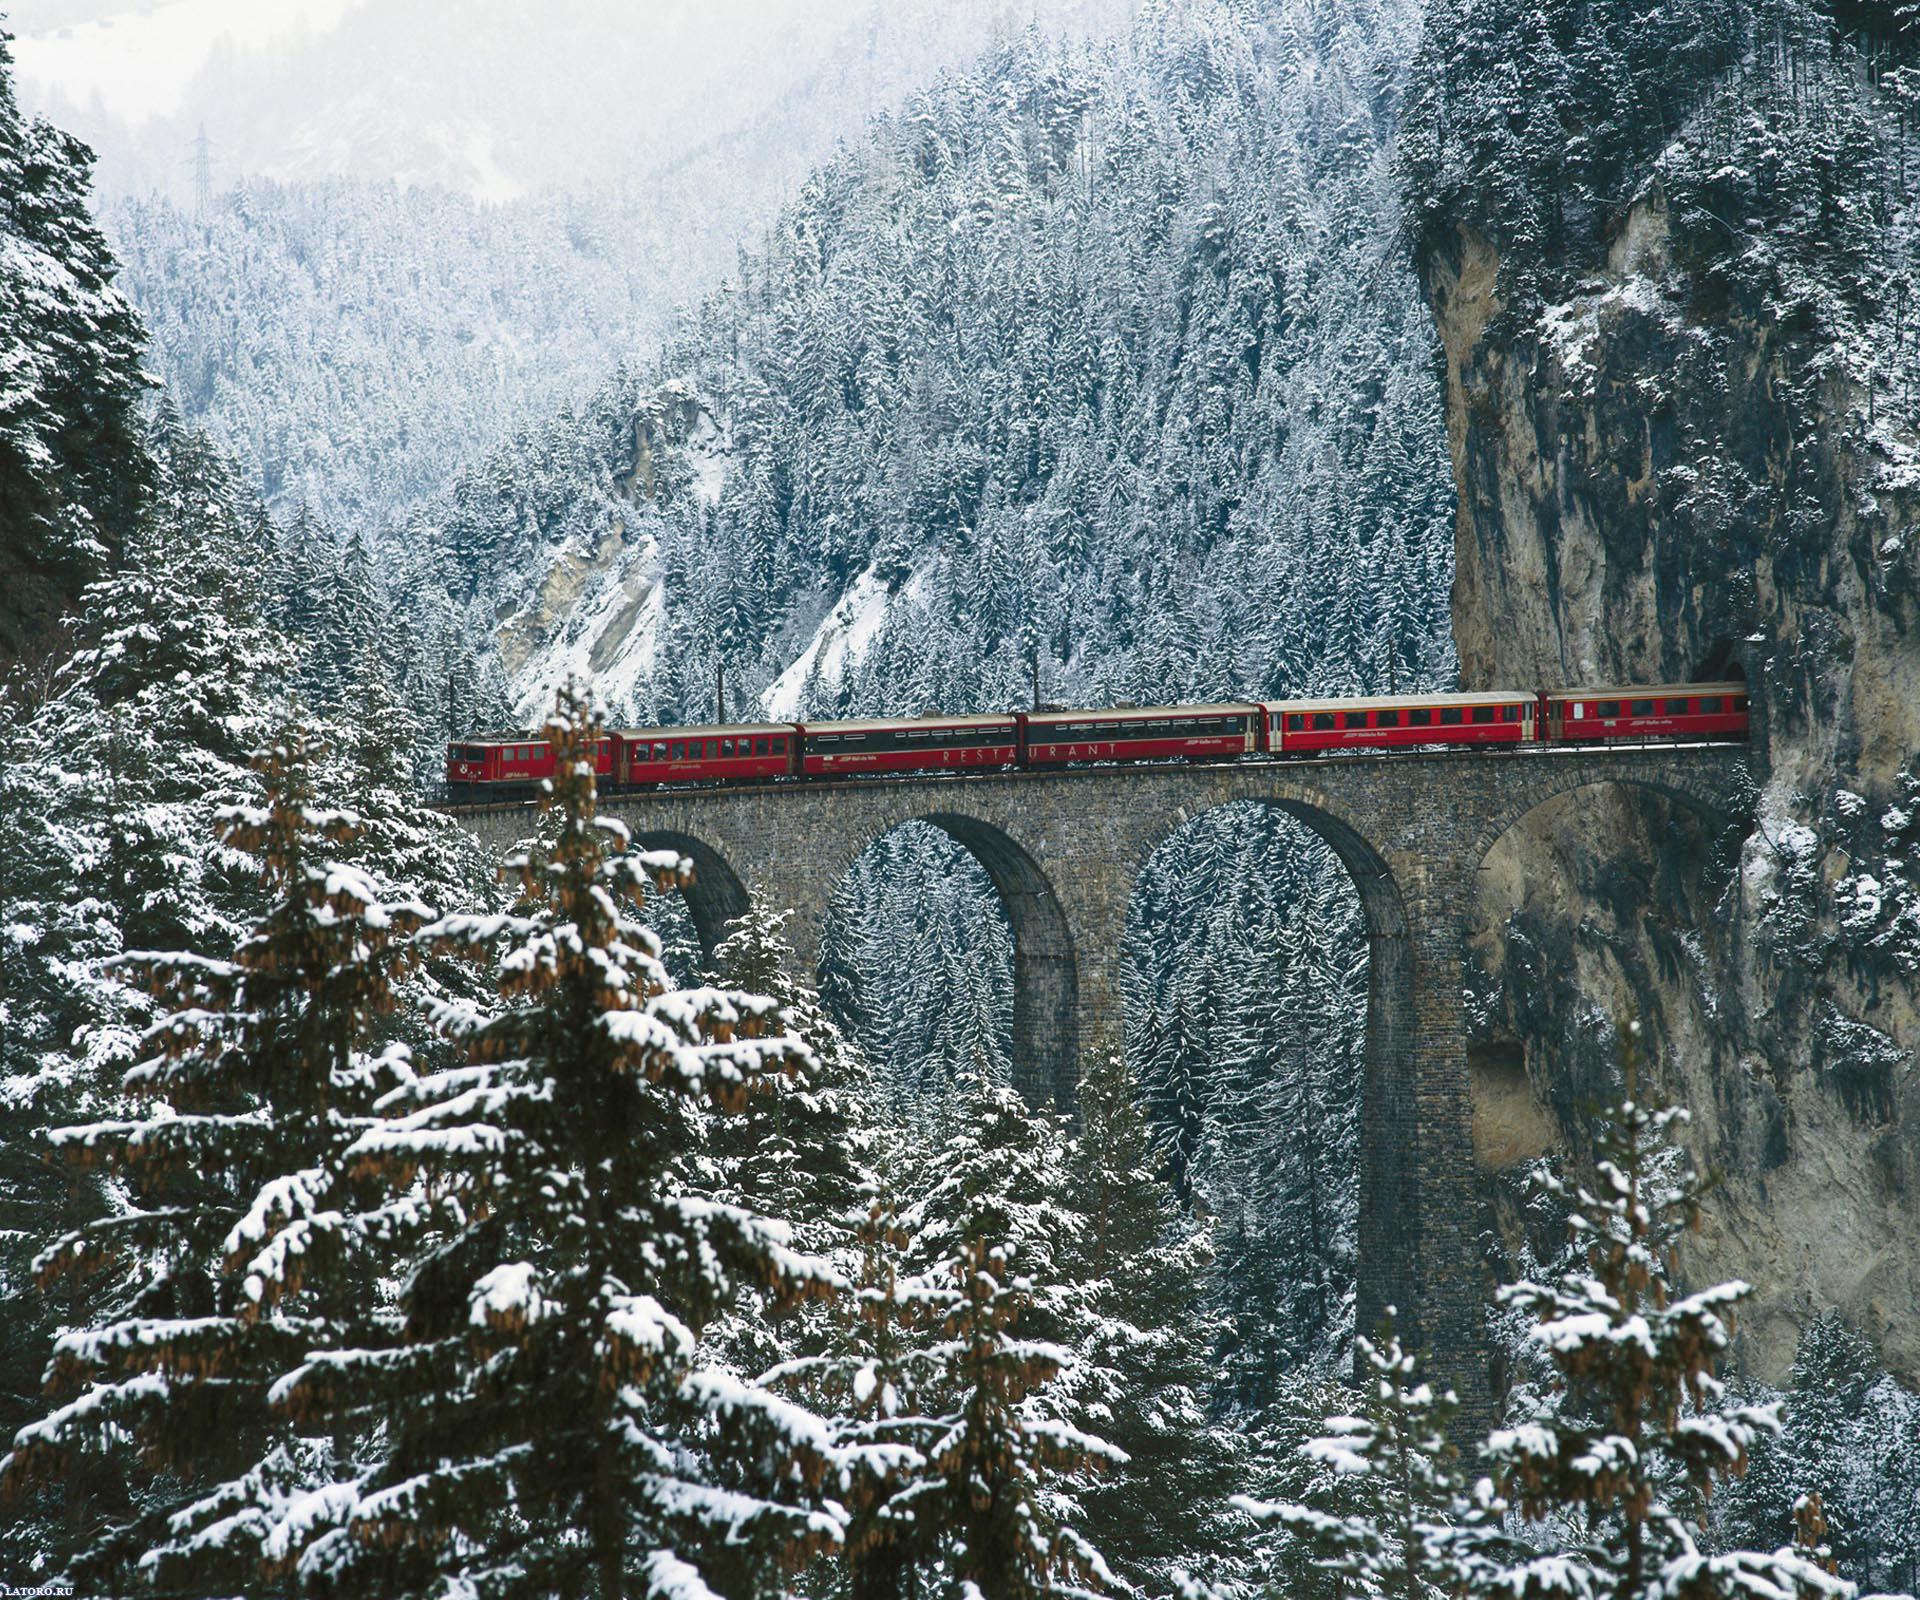 Train in the Switzerland Desktop Wallpapers FREE on Latorocom HD